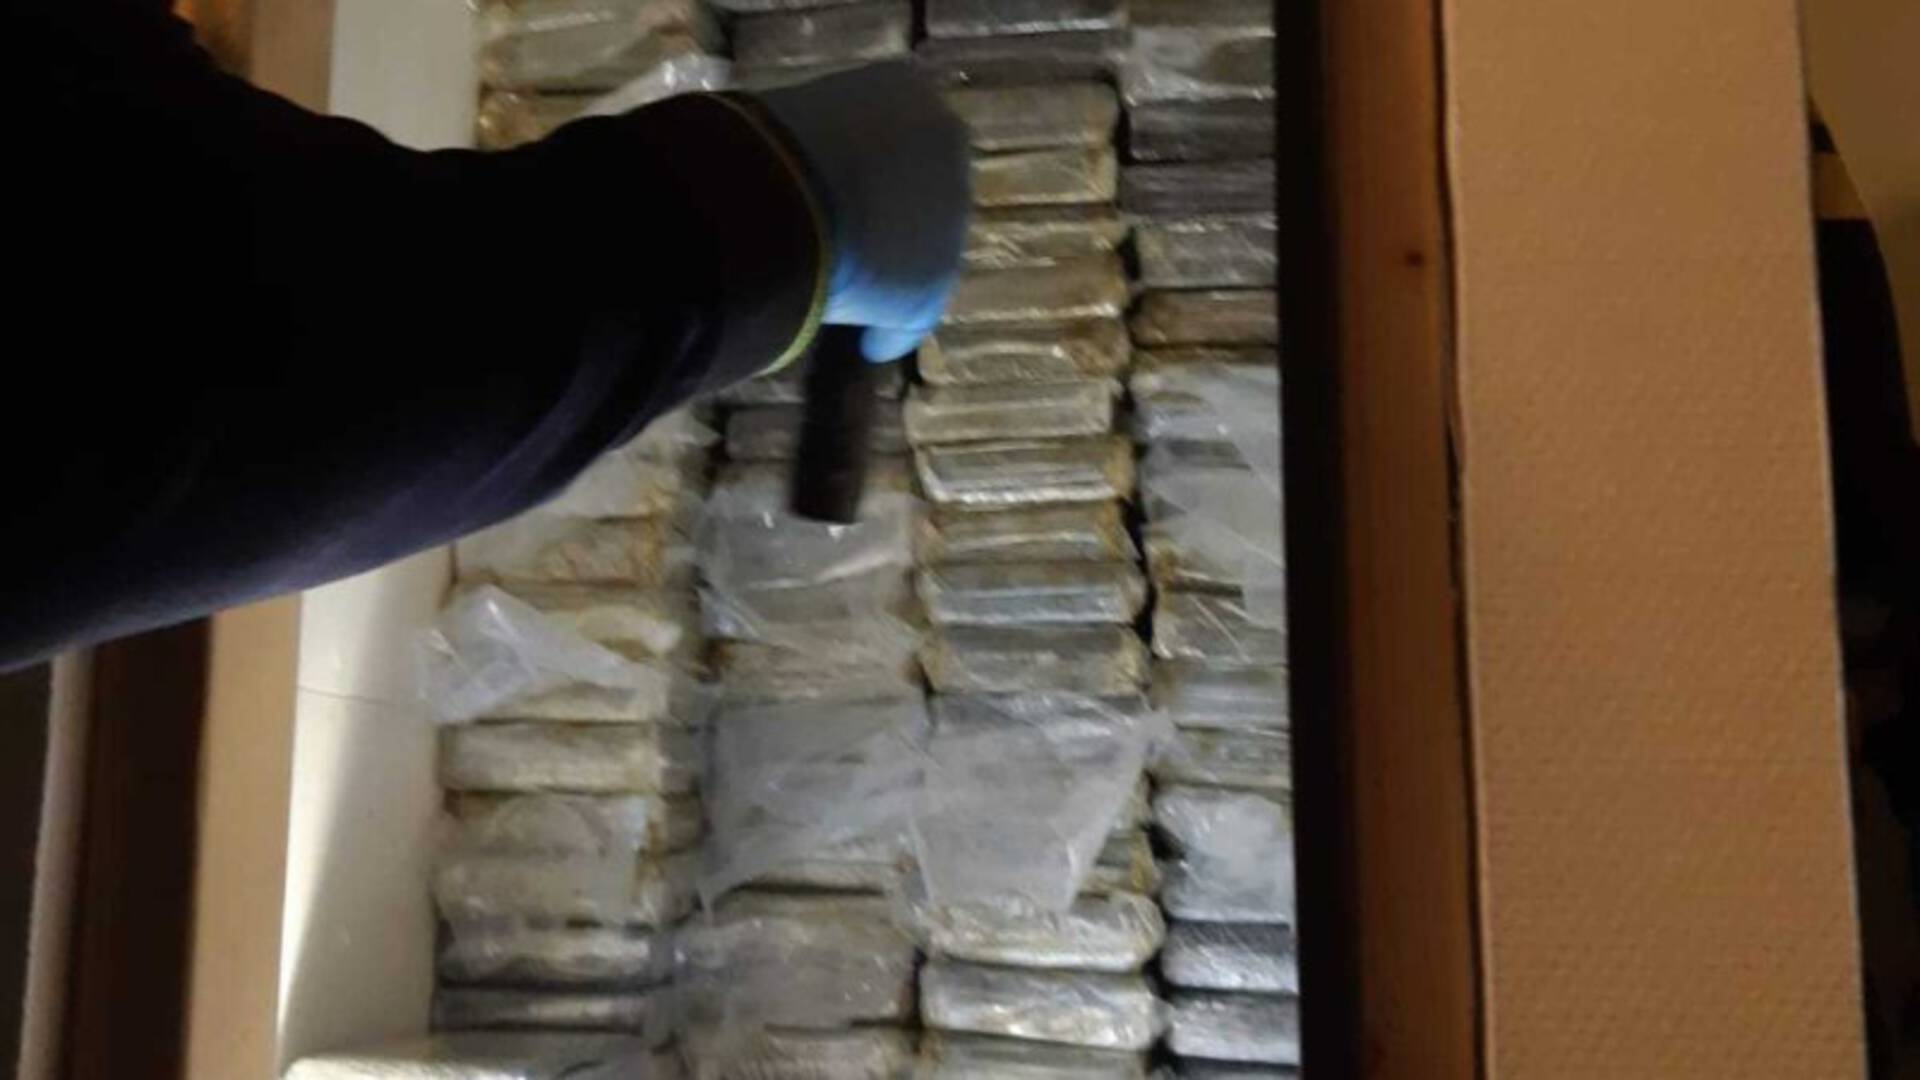 العثور على مئات الكيلوغرامات من الكوكايين في منازل في Rotterdam